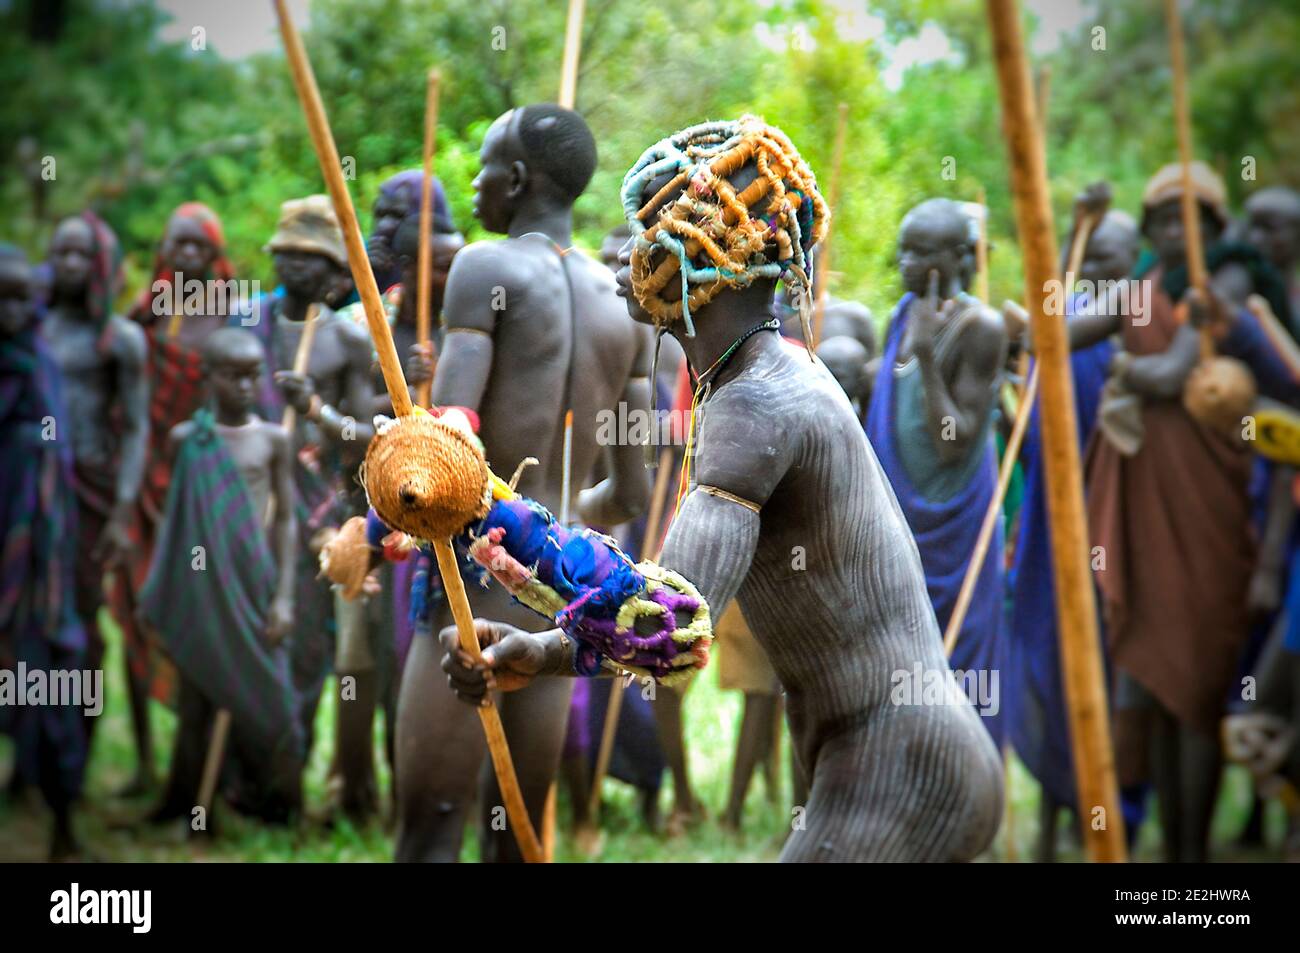 Environ 20 à 30 hommes complètent le tournoi. OMO VALLEY, ETHIOPIE: RENCONTREZ LA tribu qui s'engage dans un combat violent et sanglant de bâton avec le dernier homme Banque D'Images